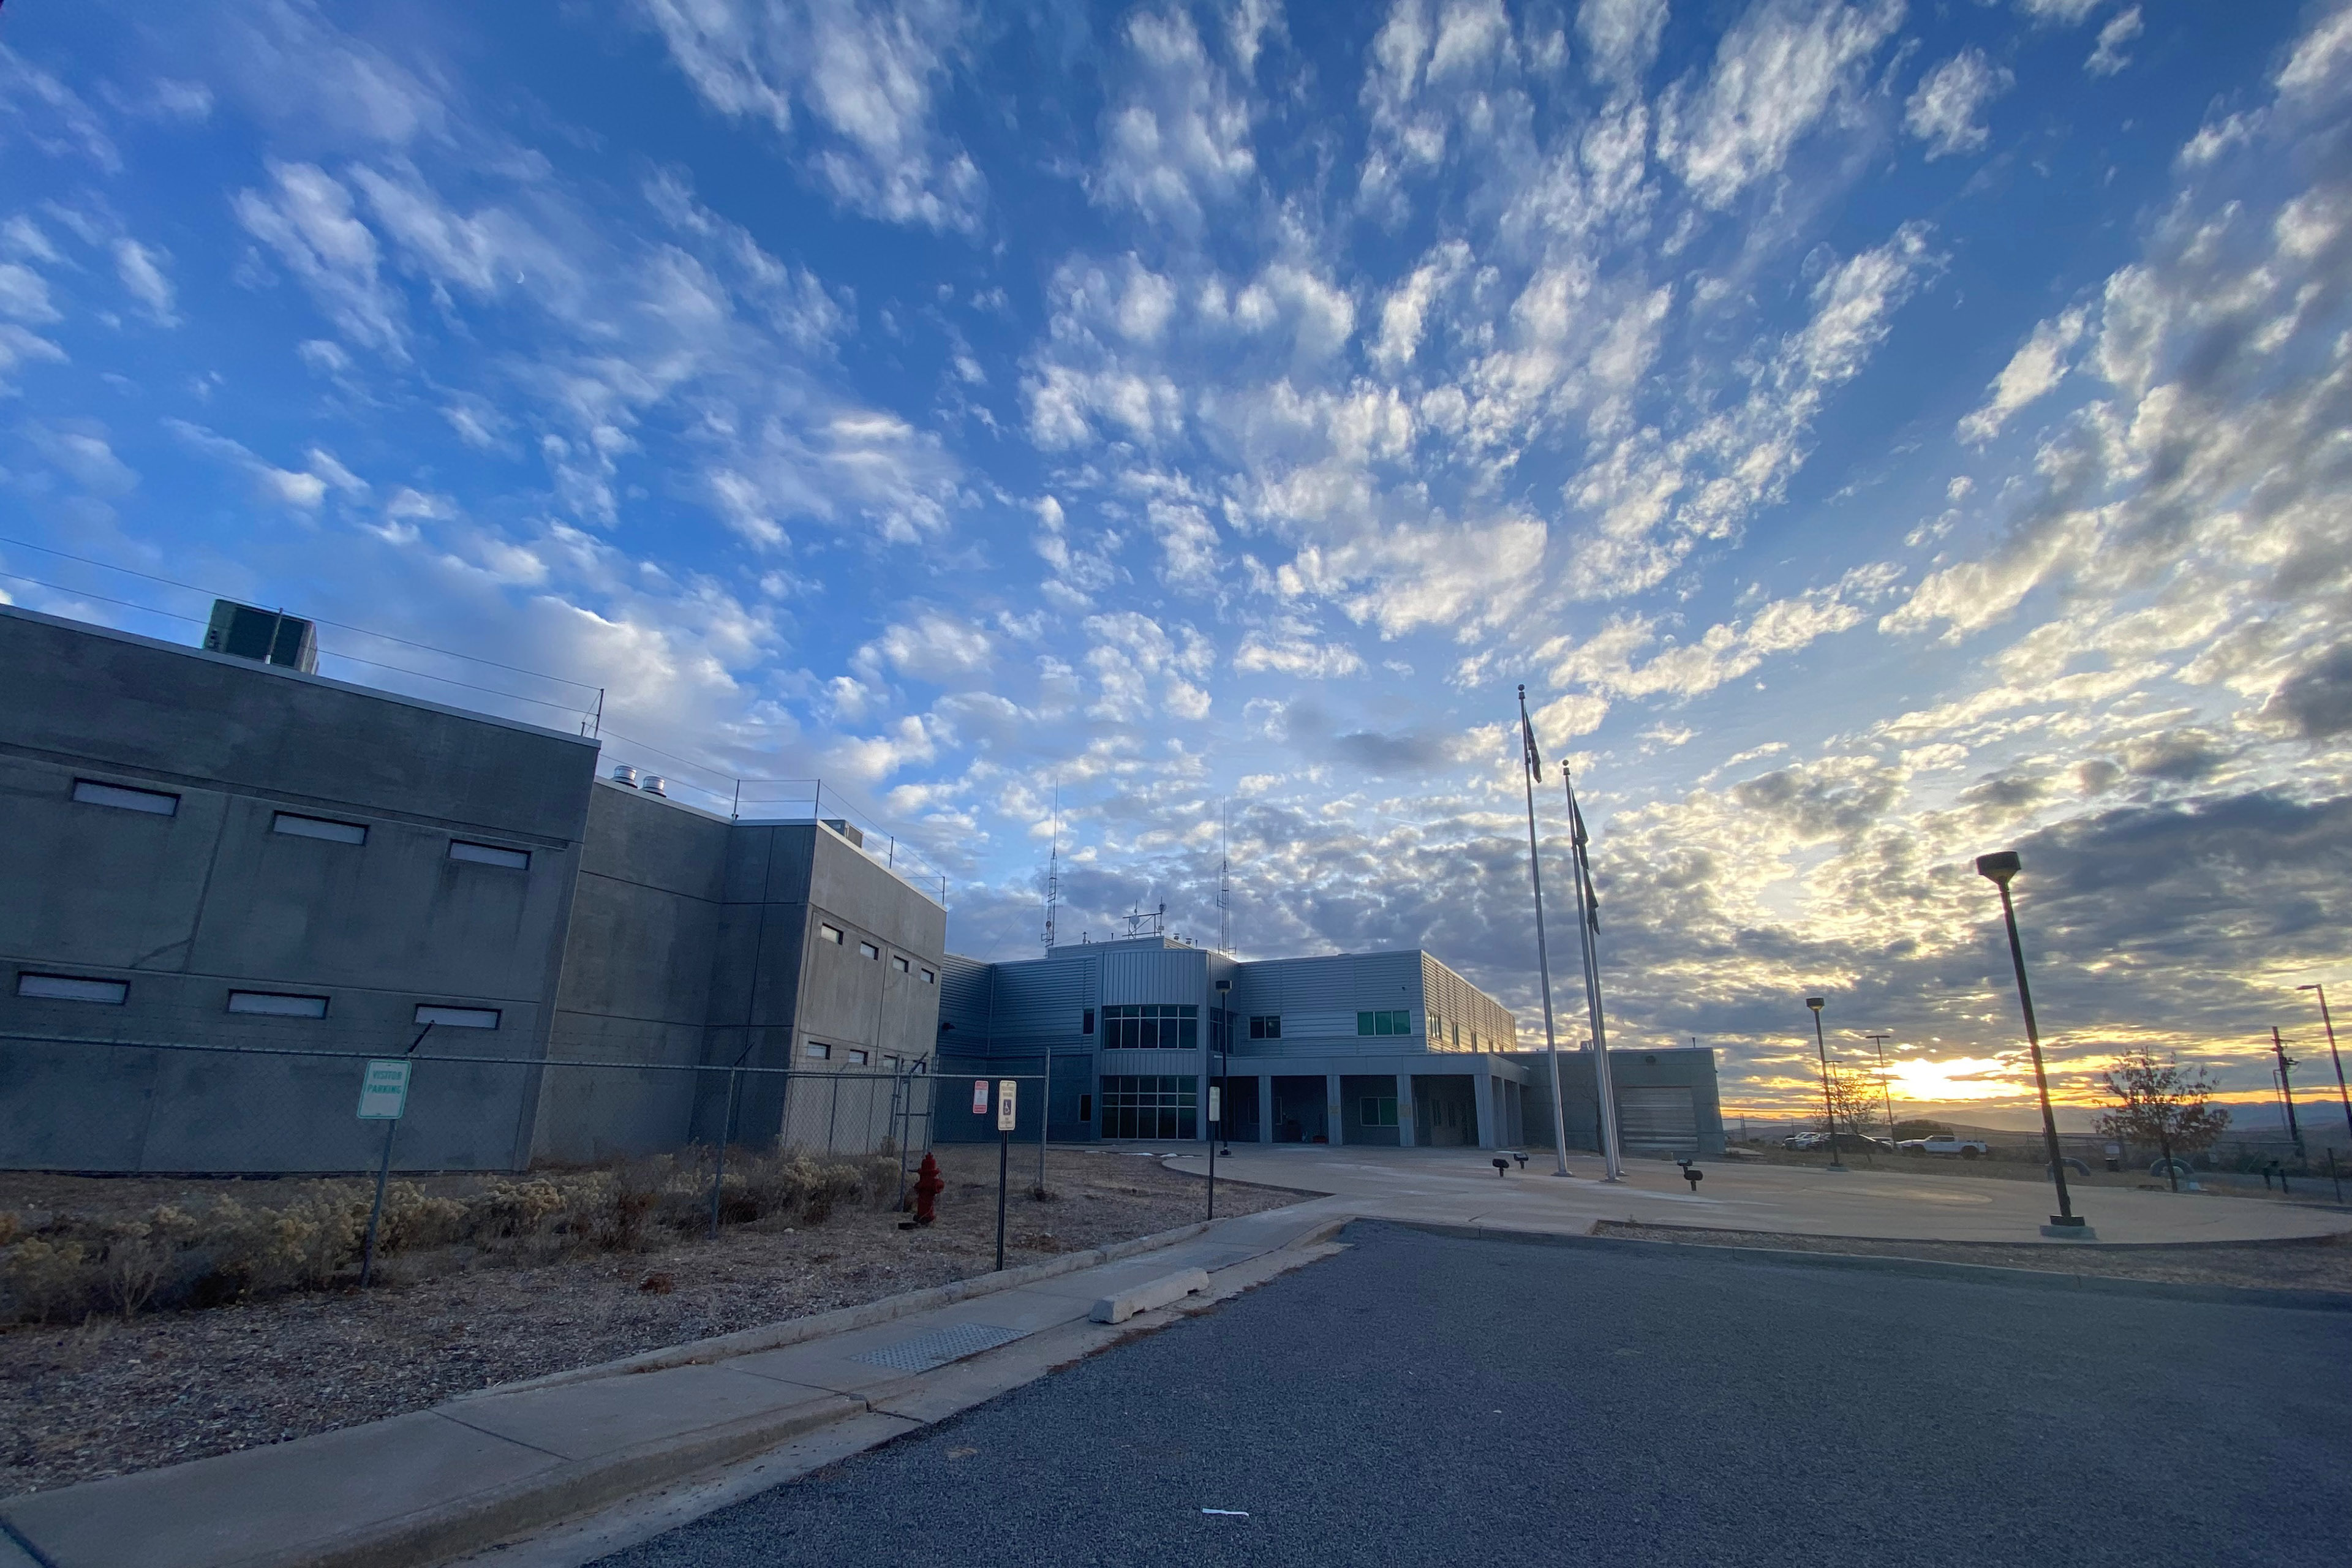 خورشید بر فراز زندان و دفتر کلانتر شهرستان سانپیت در خارج از مانتی، یوتا طلوع می کند.  آسمان آبی ملایم است که با ابرهای کوچک سفید رنگ آمیزی شده است.